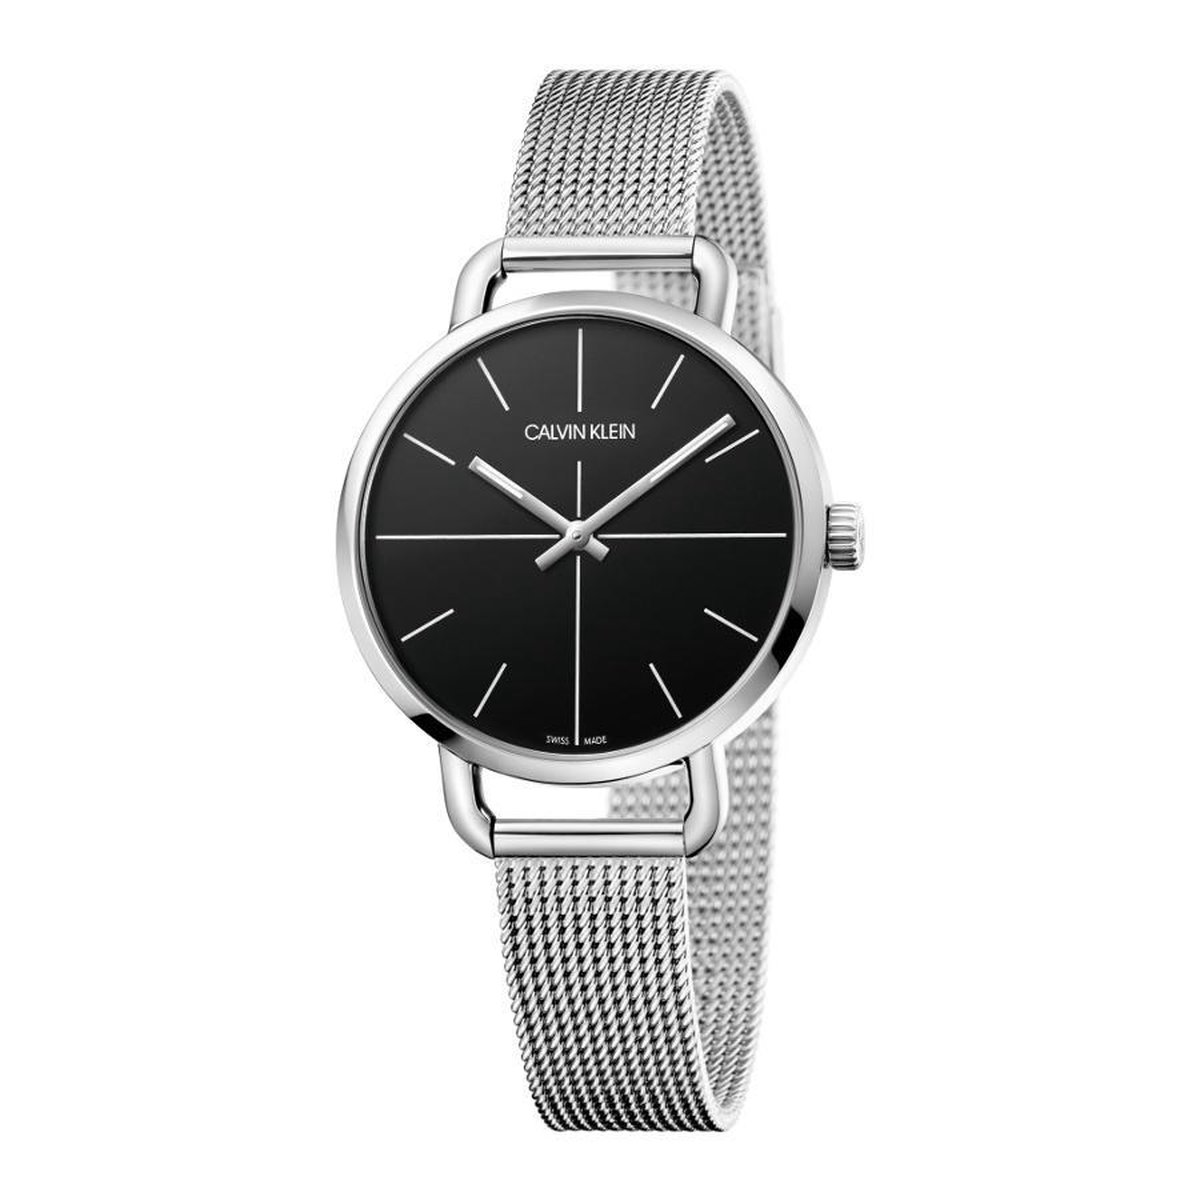 Calvin Klein Even horloge - Zilverkleurig